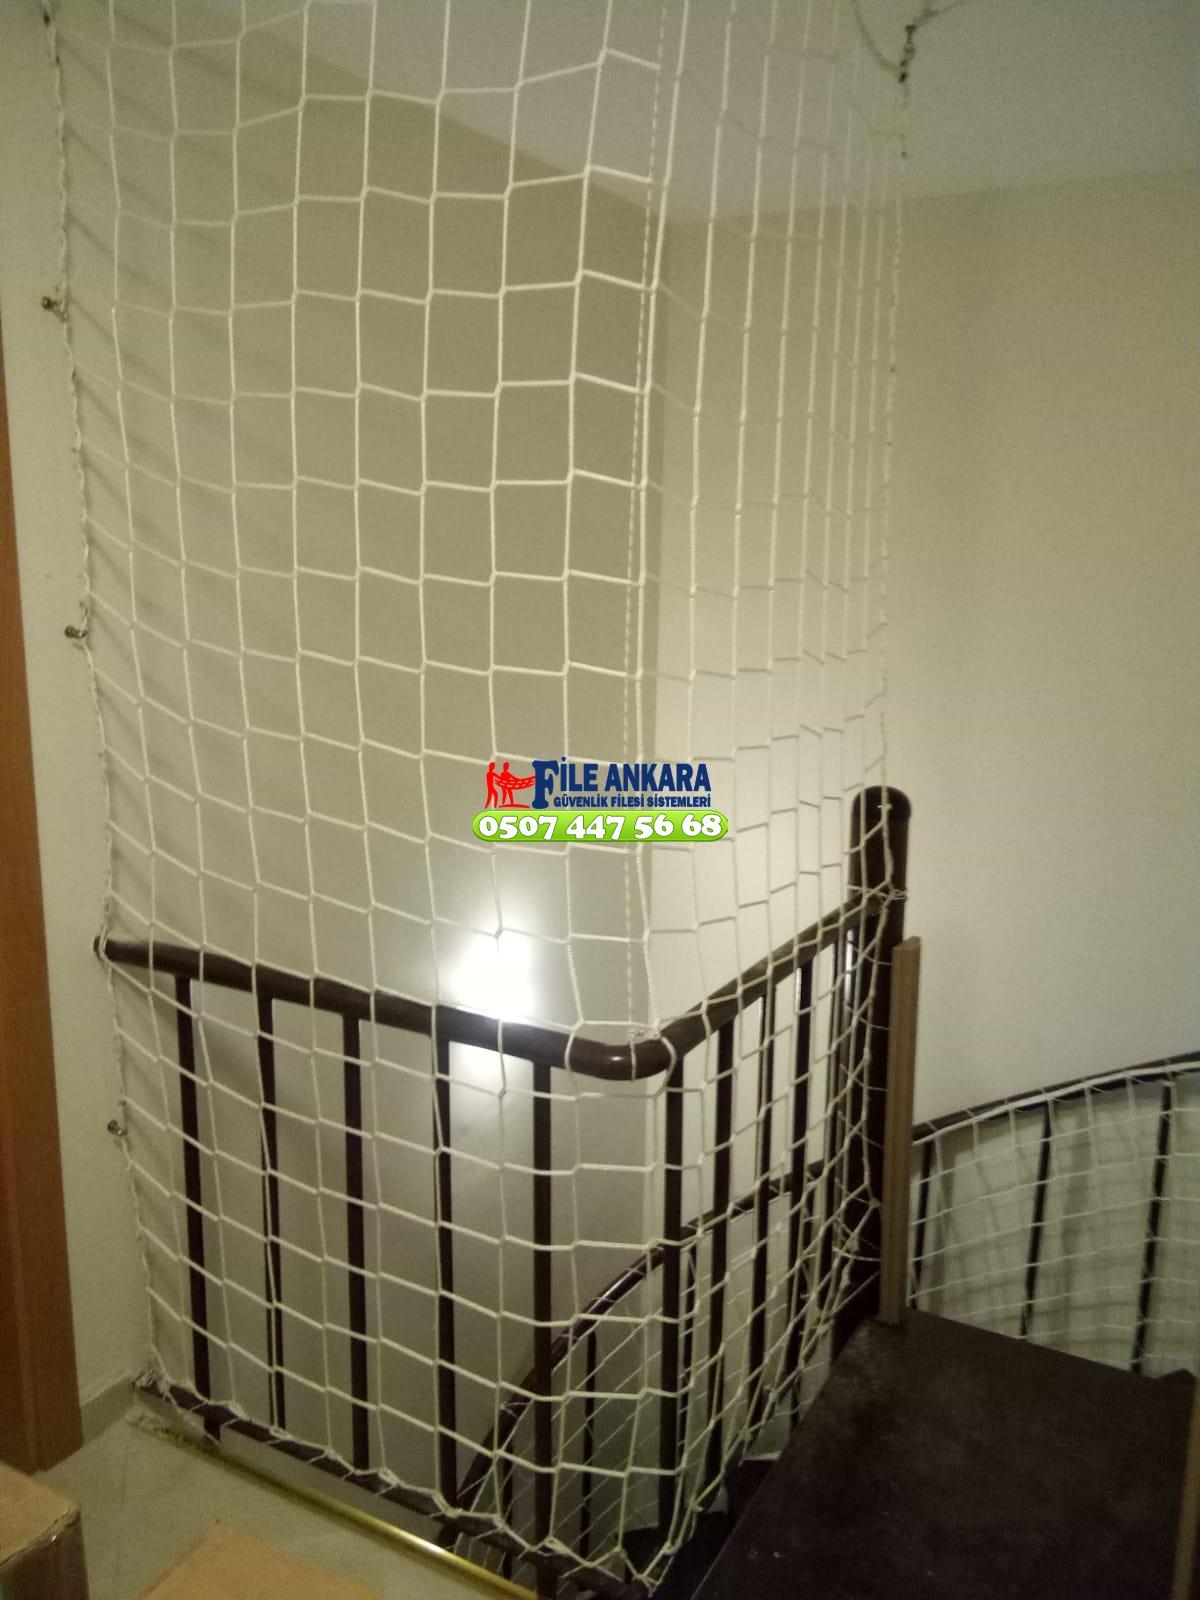  Cebeci Balkon  koruma filesi - Merdiven filesi - En ucuz balkon güvenlik filesi satış ve montajı 0507 447 56 68